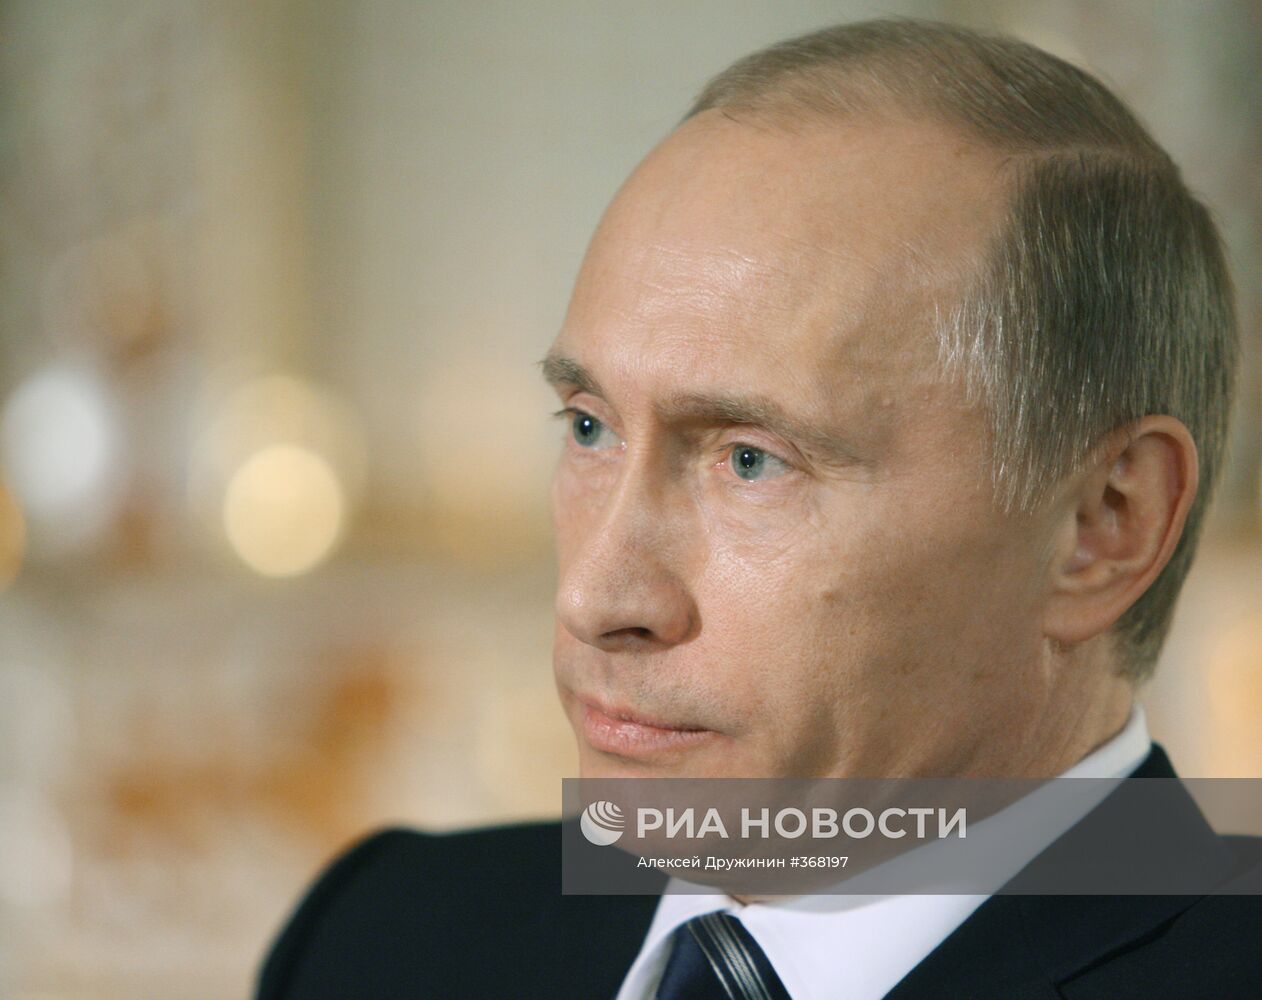 В. Путин дал интервью немецкому телеканалу ARD